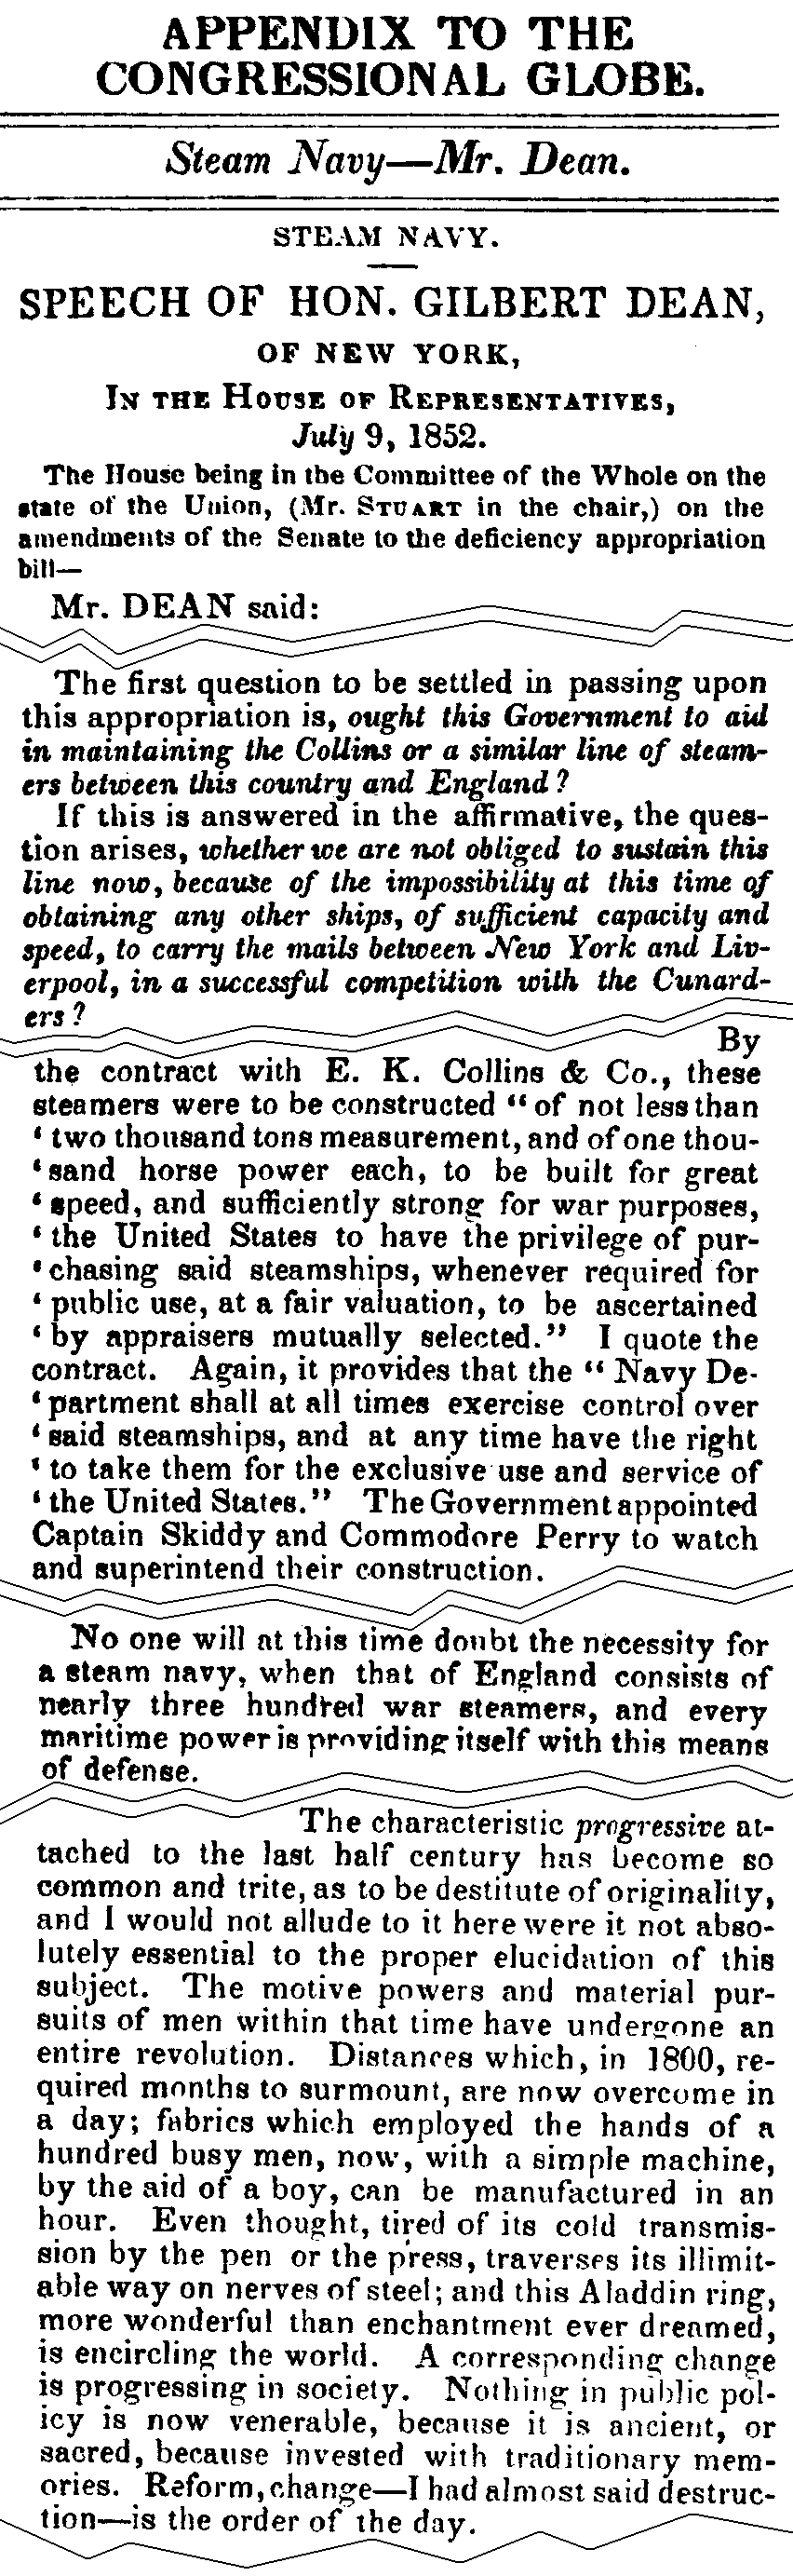 July 9, 1852: Cunard excerpts from Gilbert Dean's speech, pages 813-814